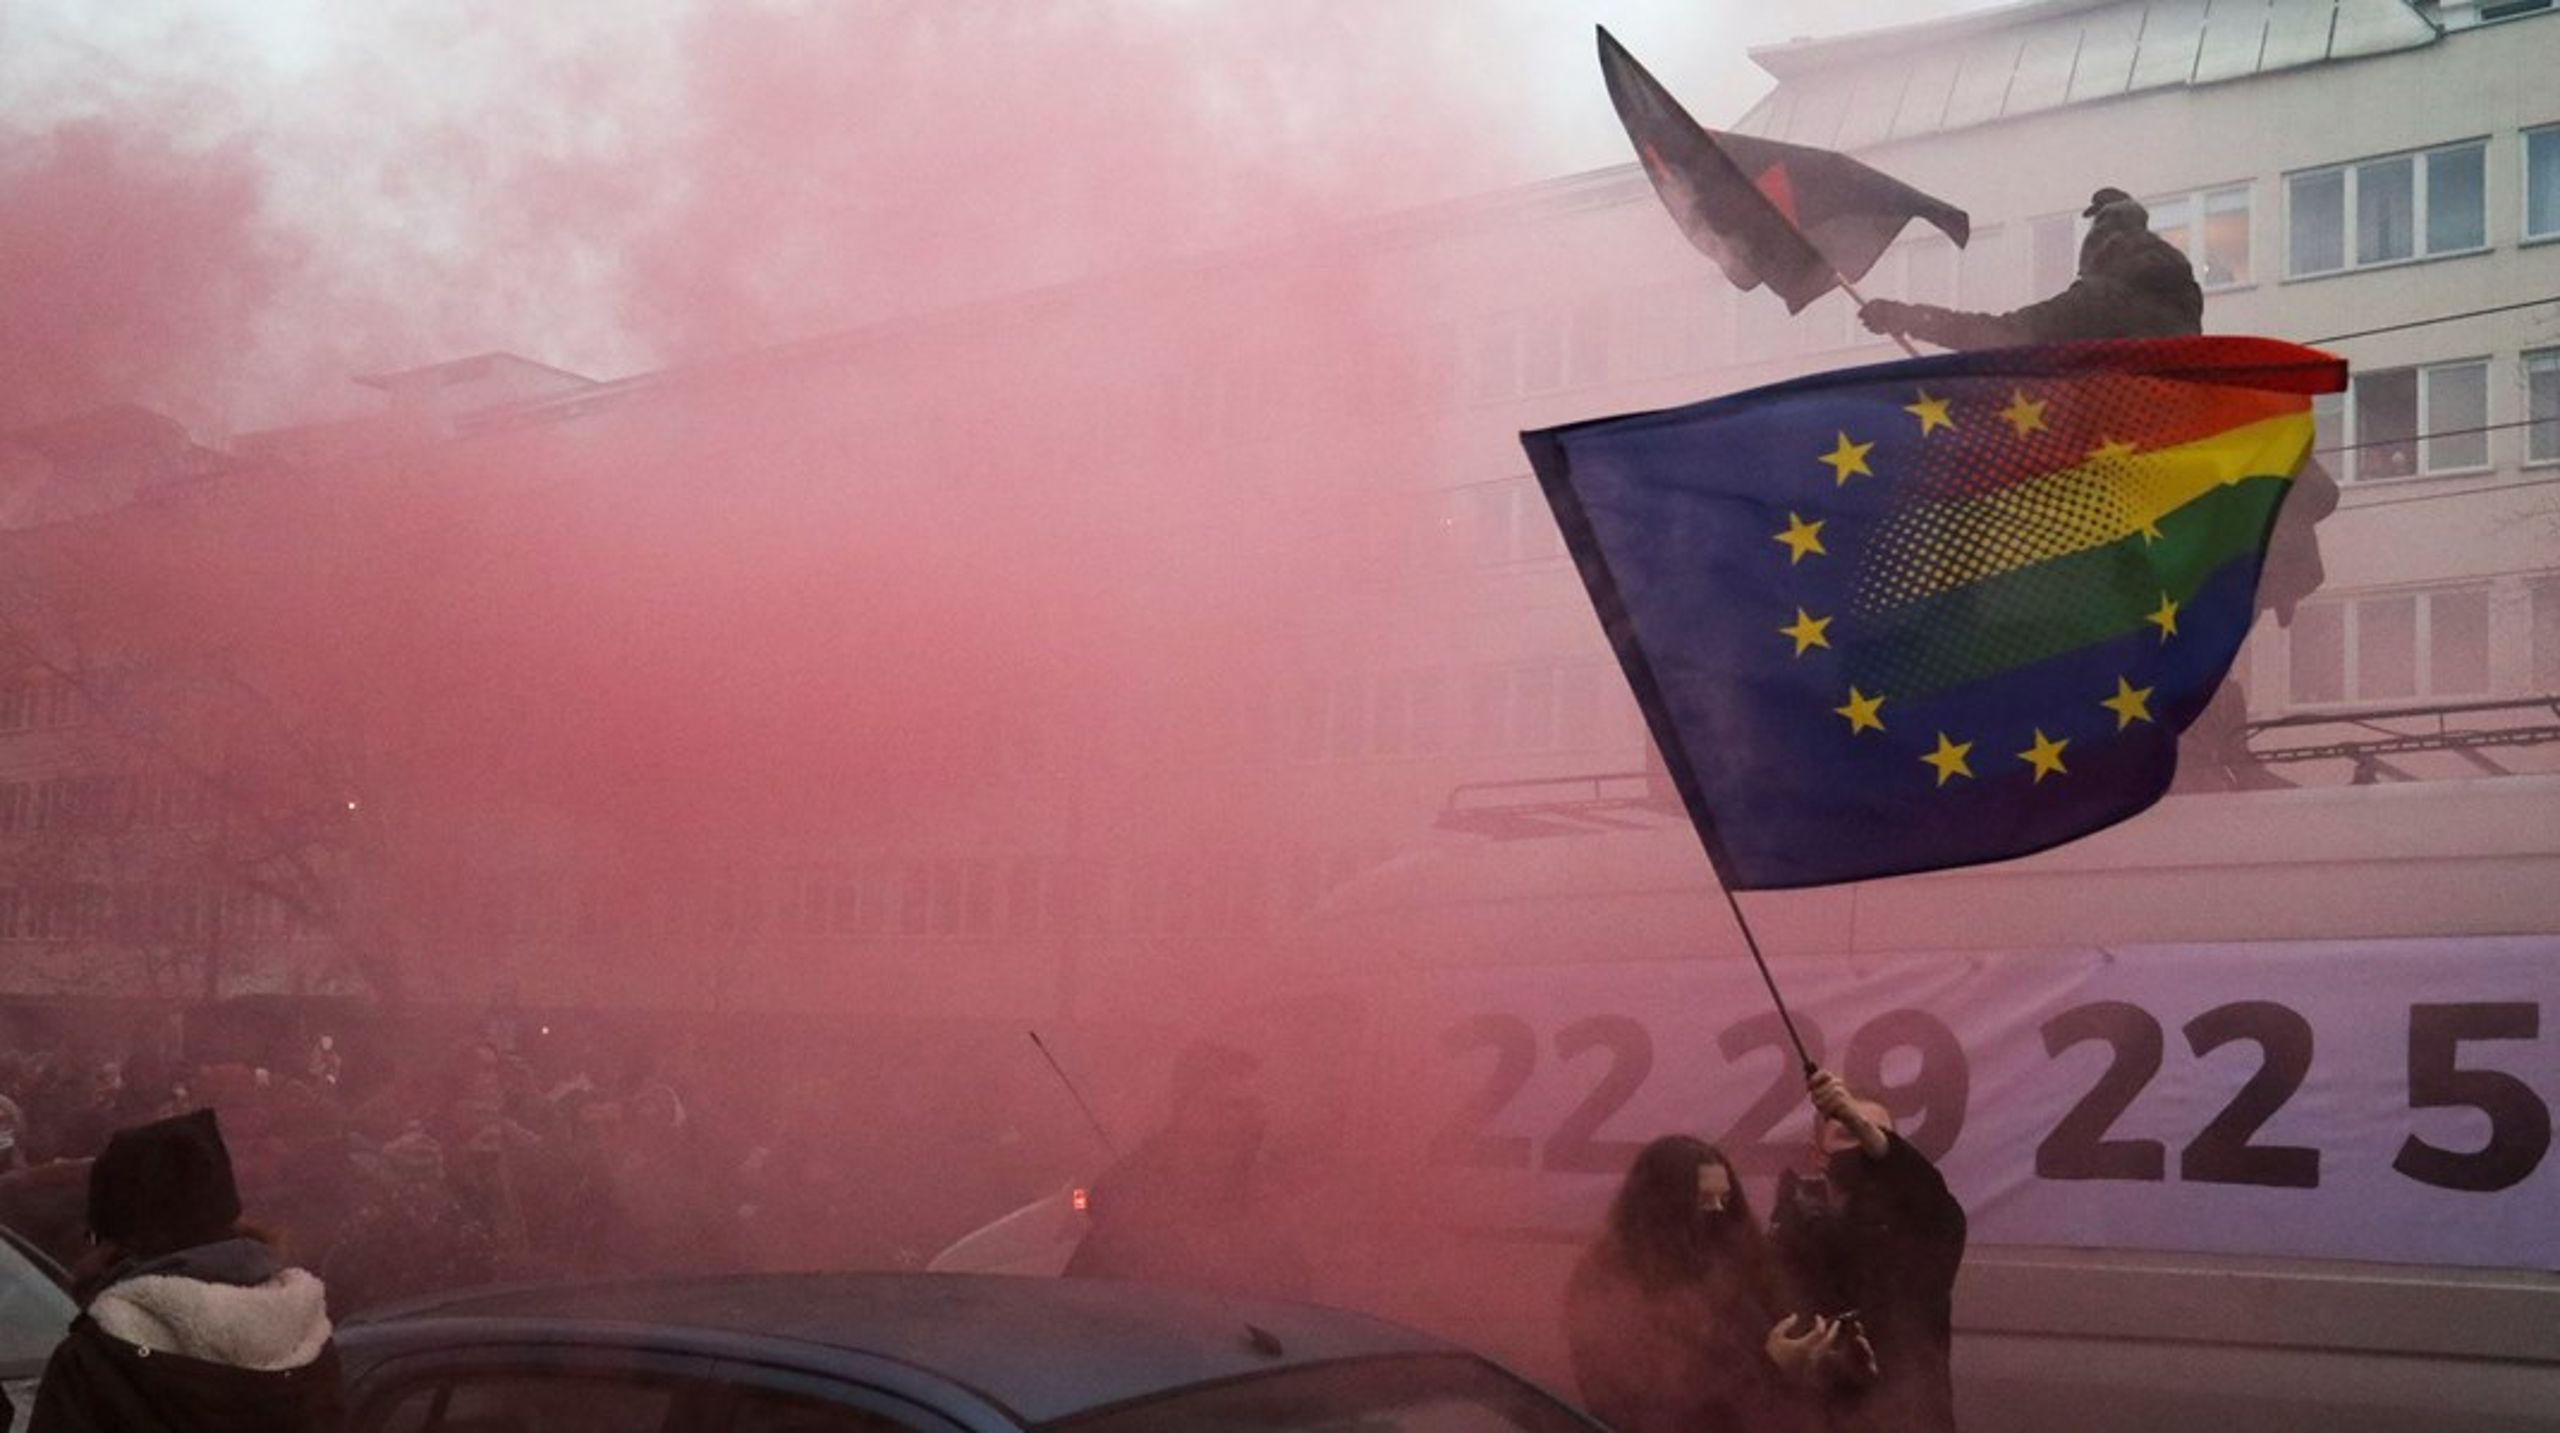 "Ser man billeder fra demonstrationerne, springer det i øjnene, at befolkningen flager med EU-flag. For dem står EU netop for fundamentale rettigheder som ligestilling mellem kønnene og kvinders ret til egen krop", skriver Lone Loklindt og Lea Friedberg